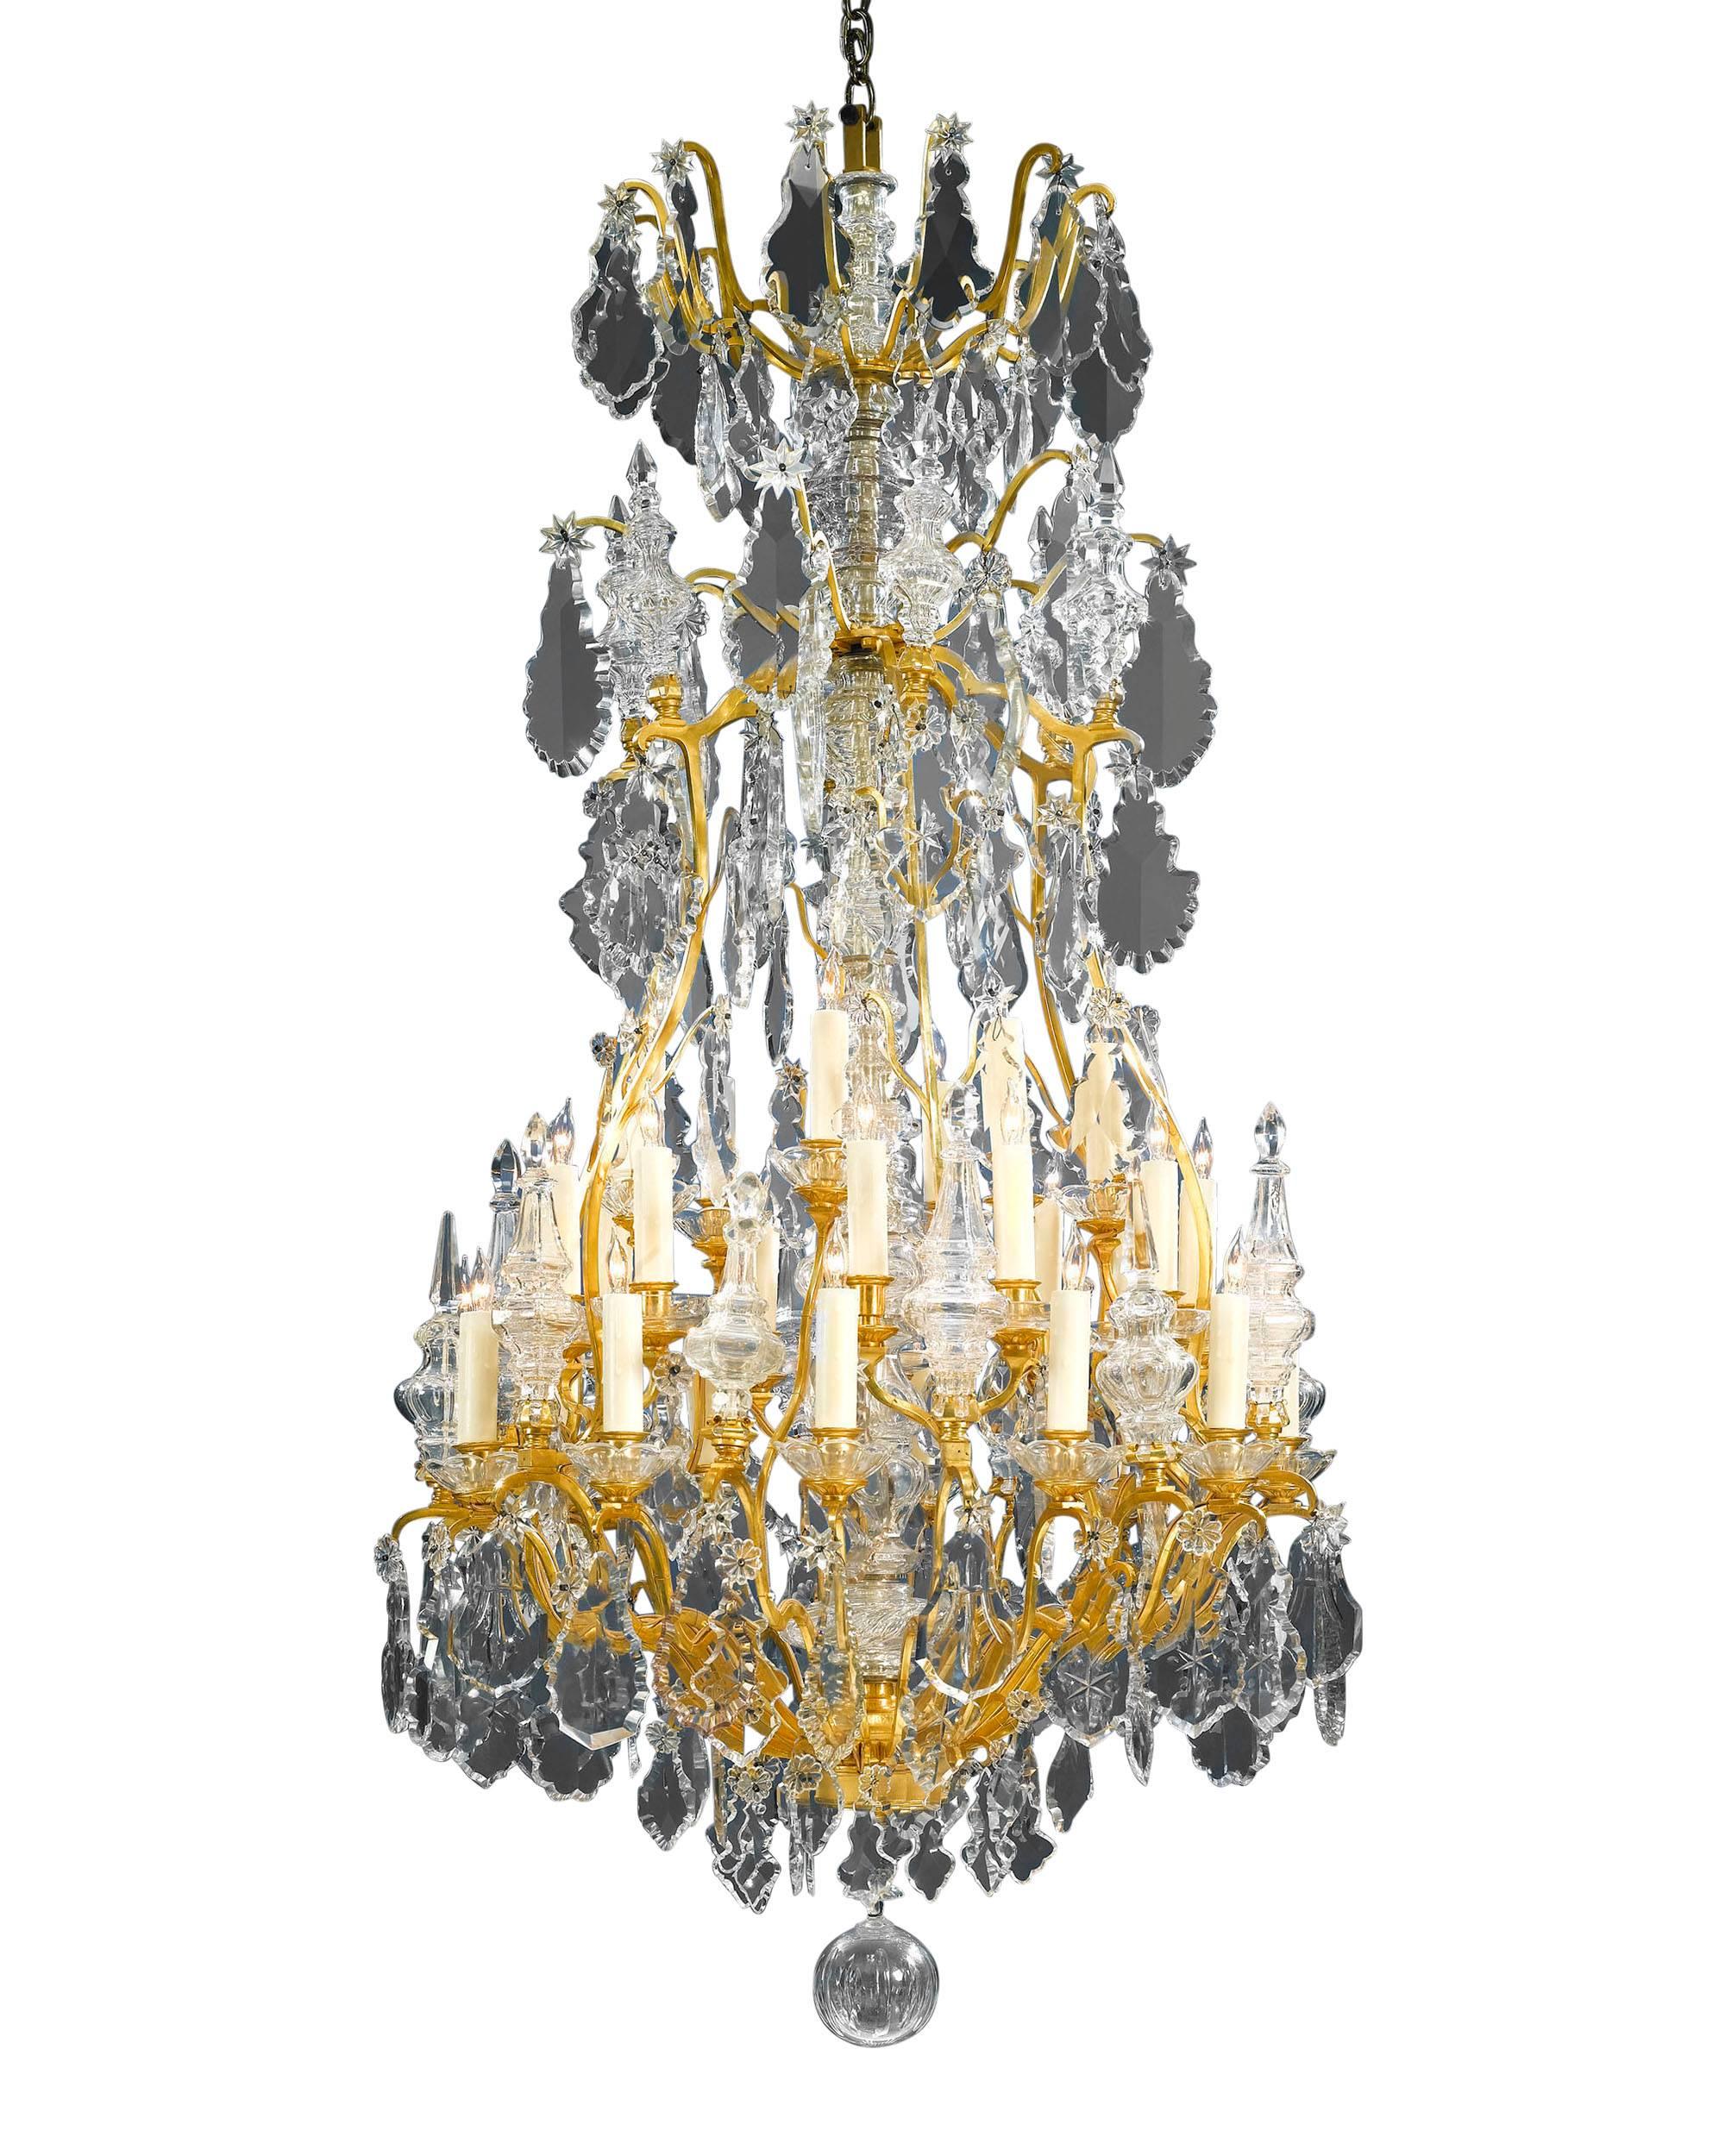 Ce lustre en cristal et bronze doré de Baccarat est un spectacle grandiose. Des centaines de prismes et de perles lumineuses surdimensionnés et magnifiquement conçus, en cristal de Baccarat poli au bois, sont suspendus à des branches défilantes en